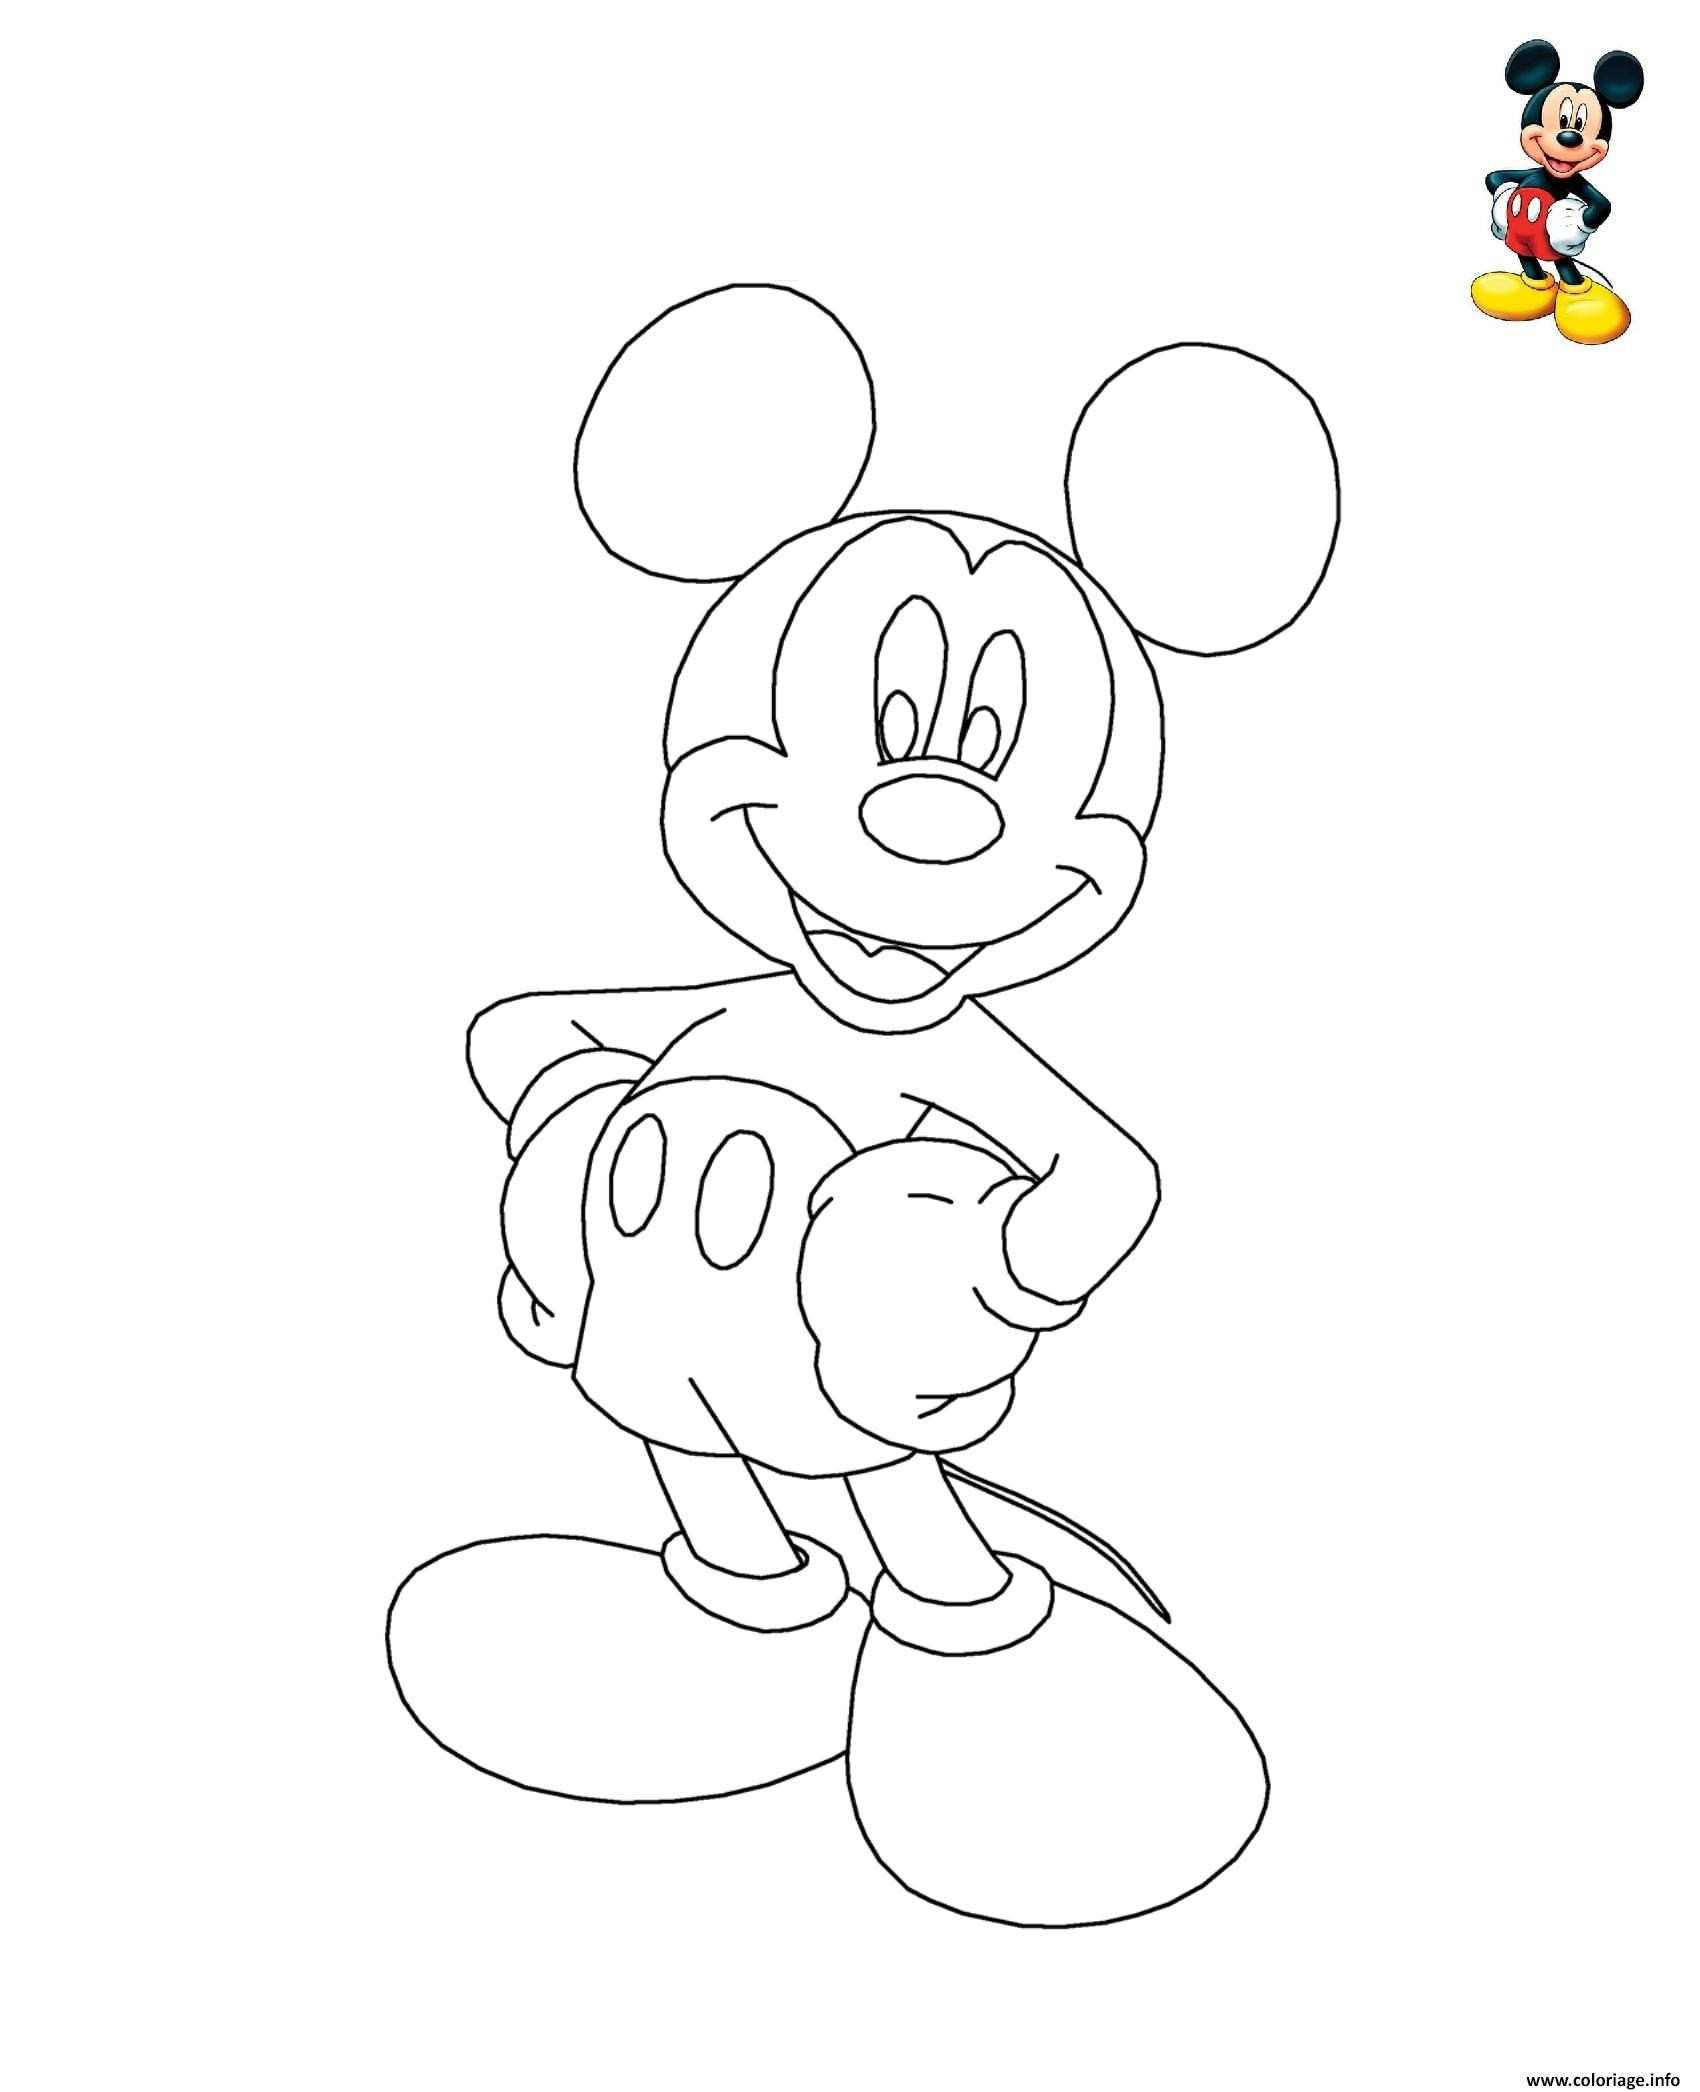 3682 ides de coloriage imprimer gratuit mickey galerie dimages 9465 minnie mouse coloriage dessin